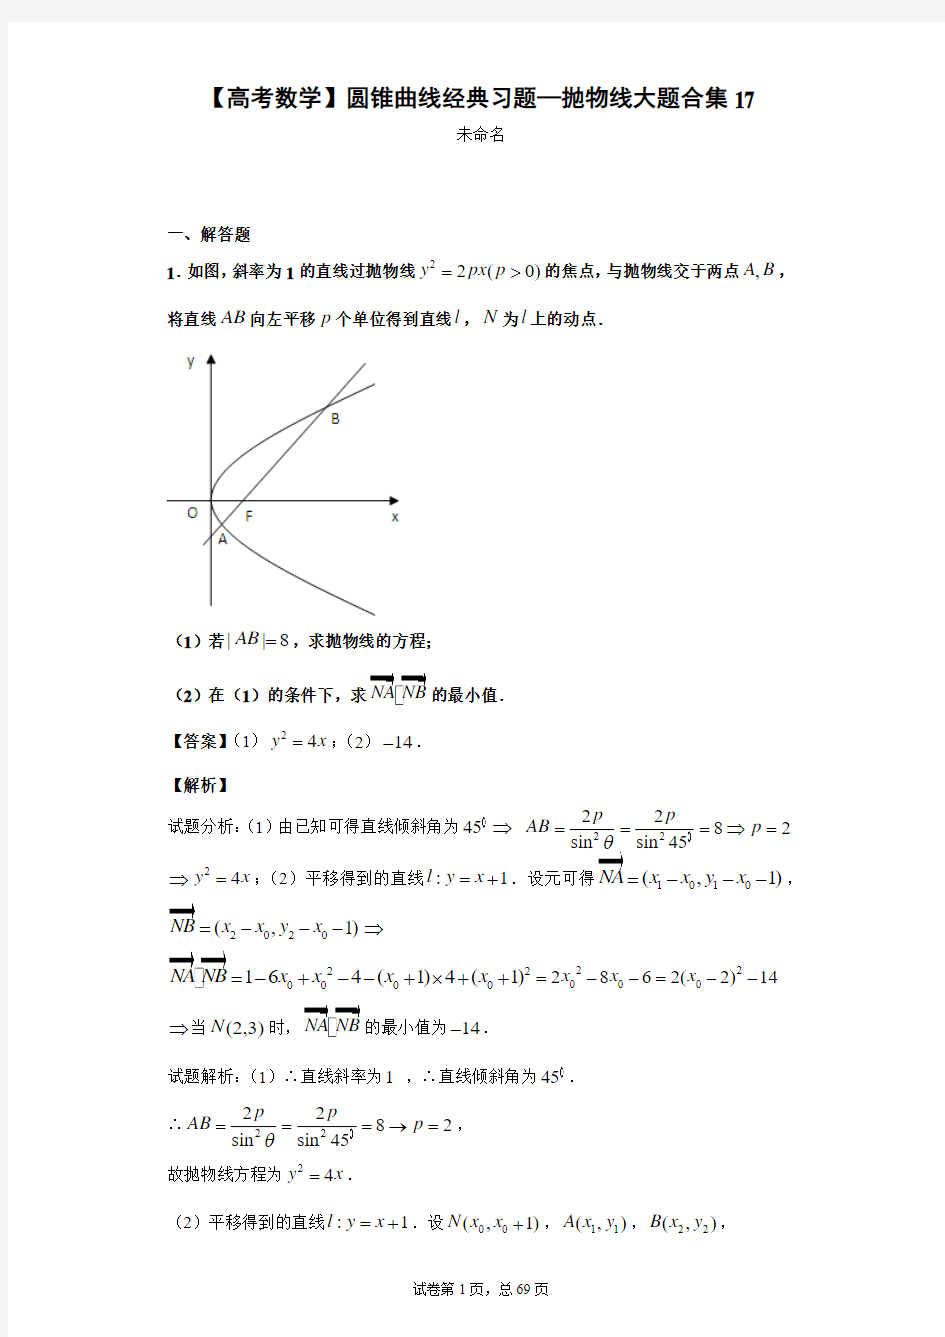 【高考数学】圆锥曲线经典习题—抛物线大题合集17